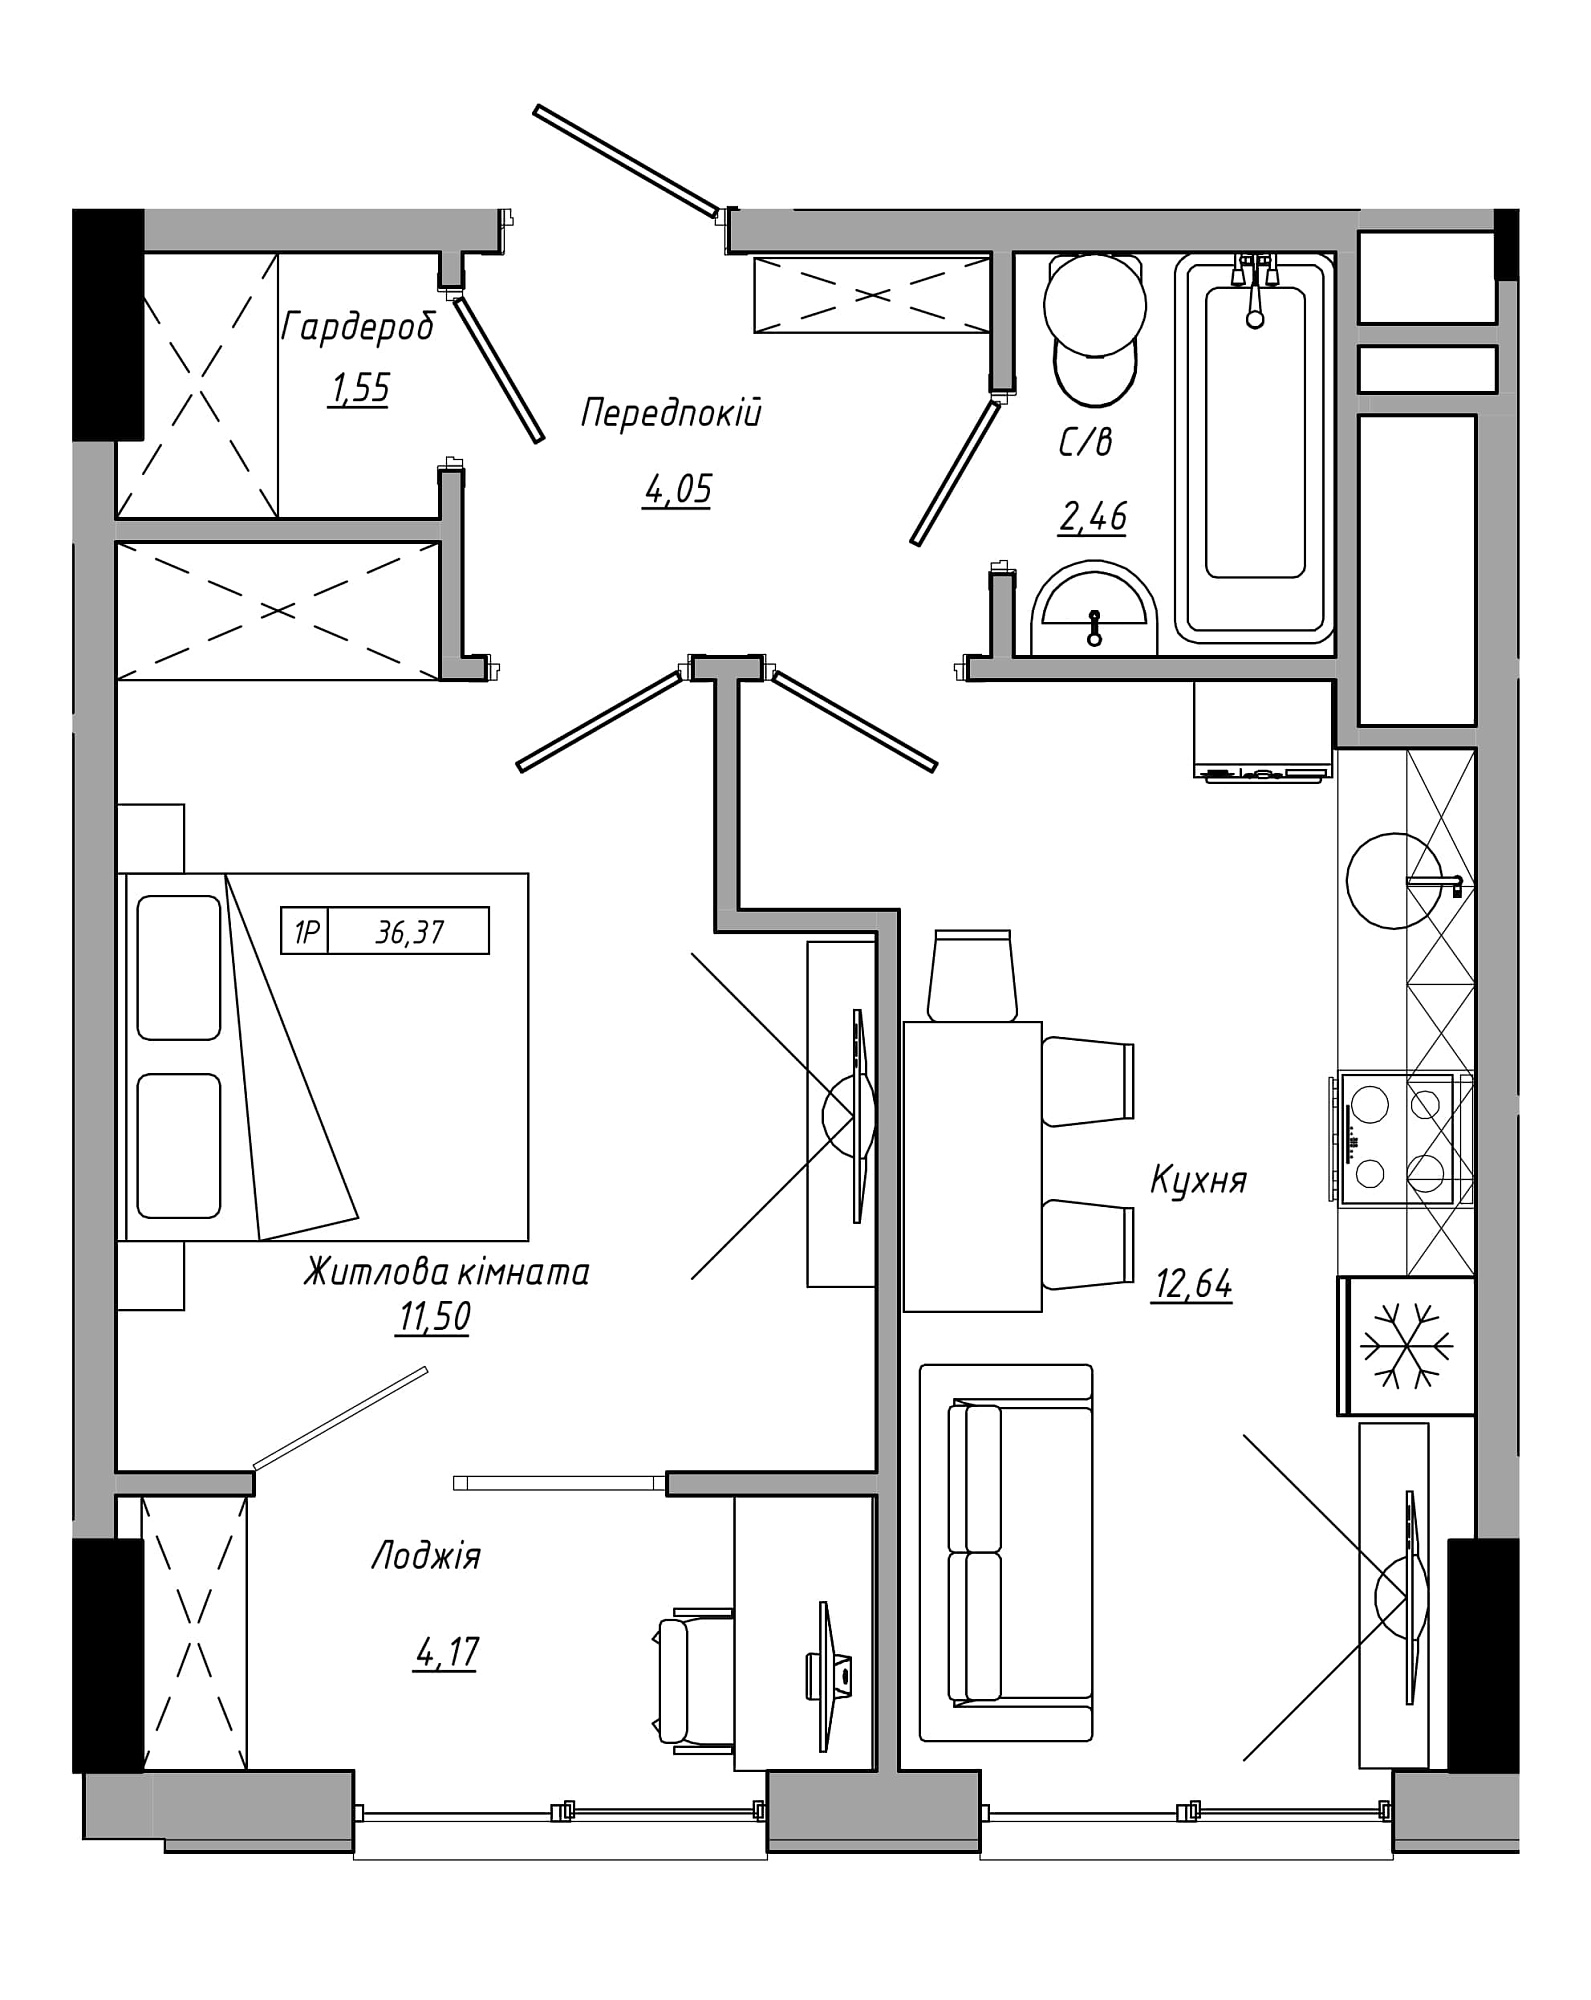 Планування 1-к квартира площею 36.37м2, AB-21-09/00020.